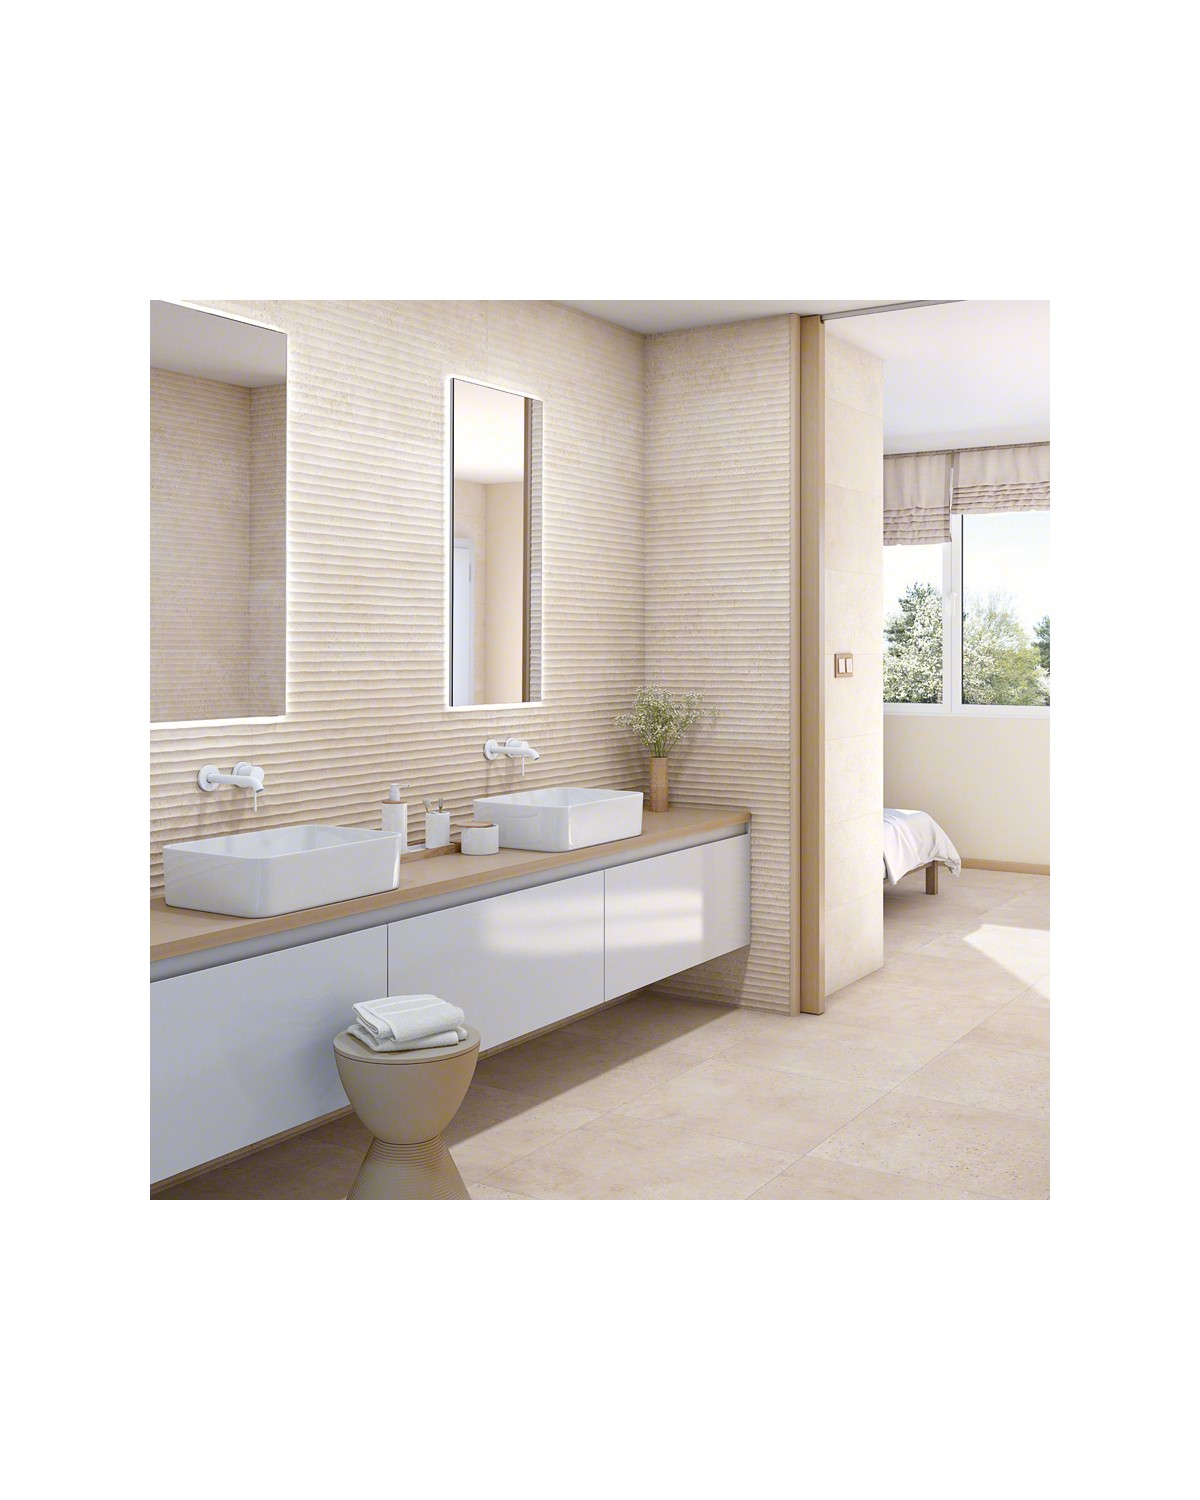 Revestimiento de duchas con porcelánico imitación madera - EUROMID LEVANTE  S.L.